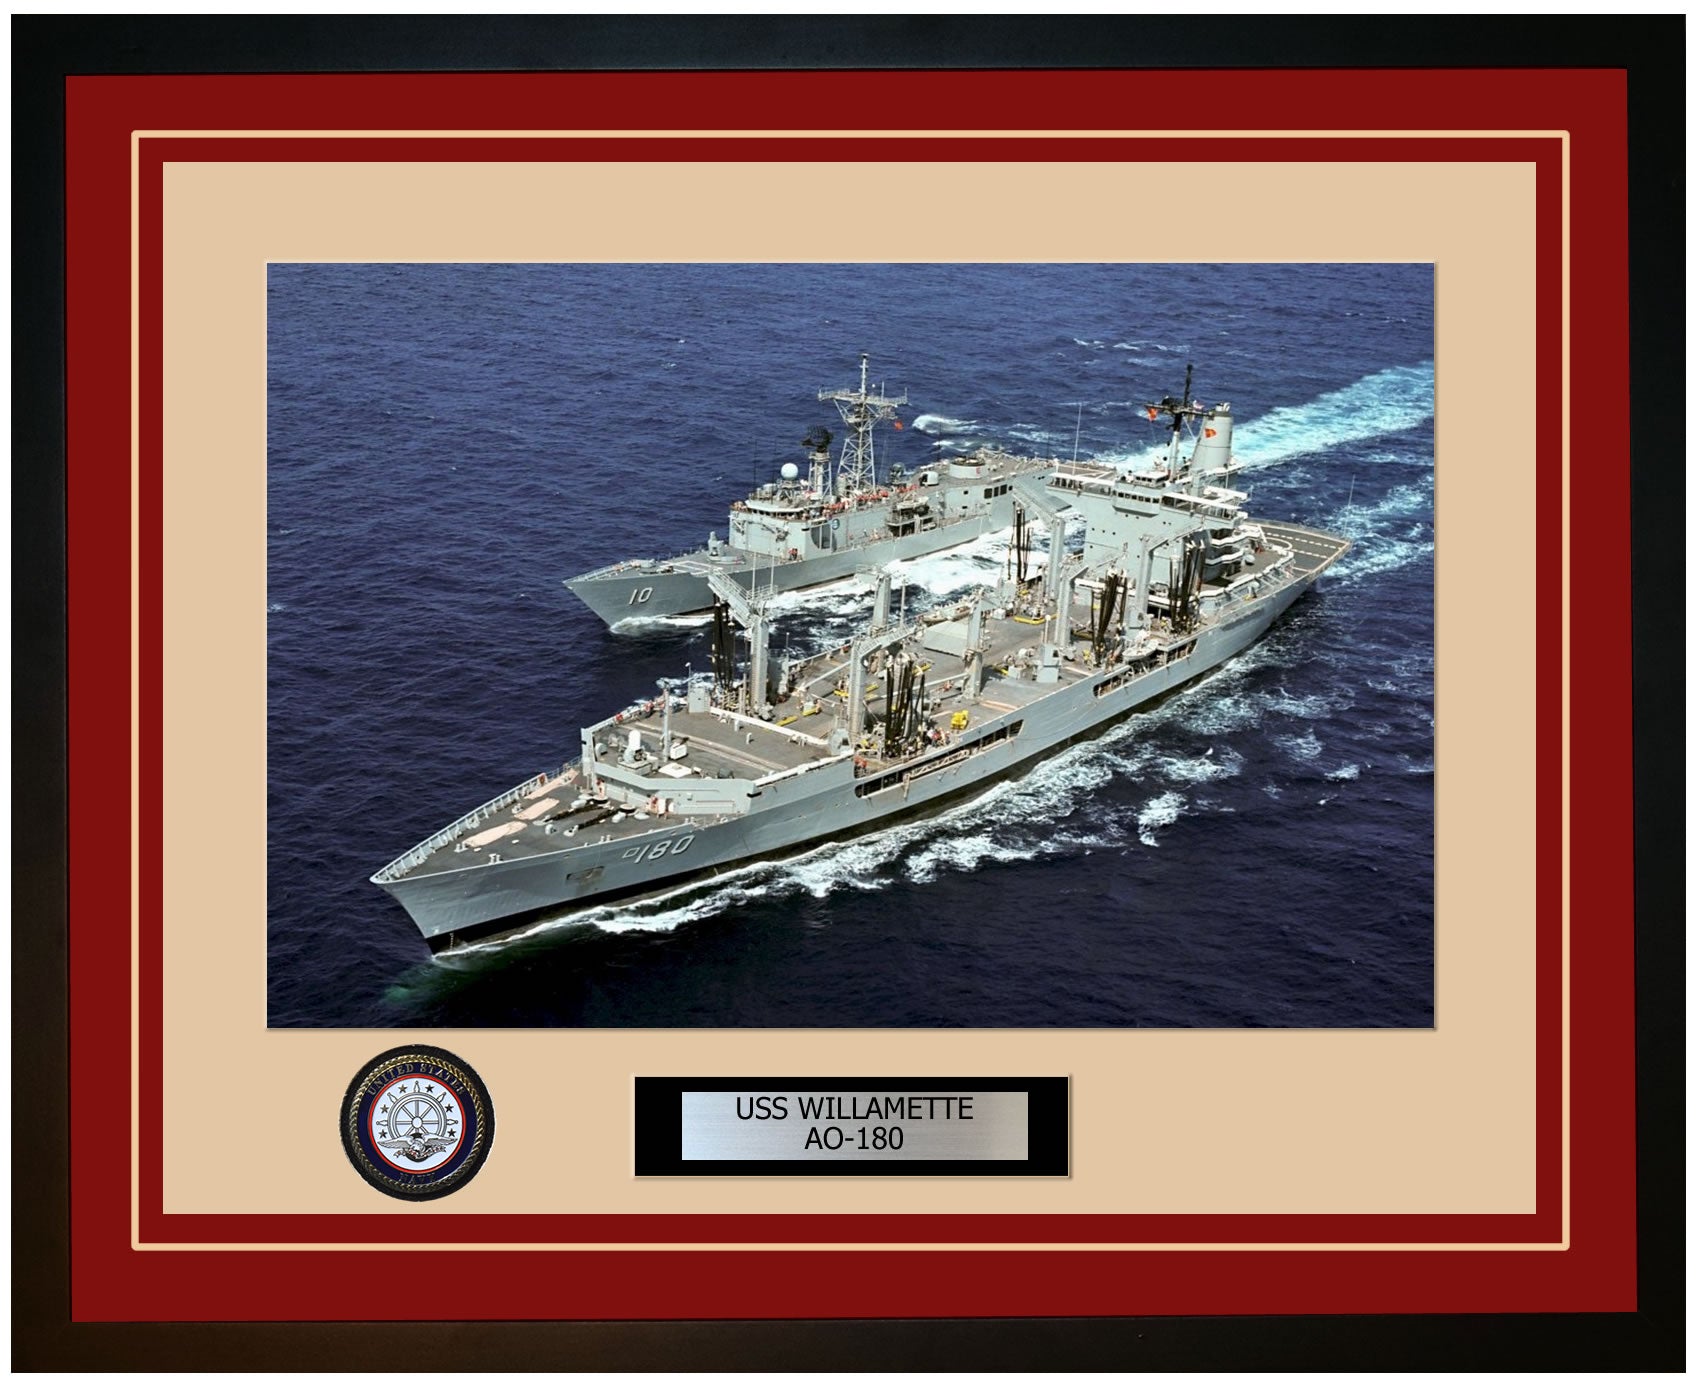 USS WILLAMETTE AO-180 Framed Navy Ship Photo Burgundy